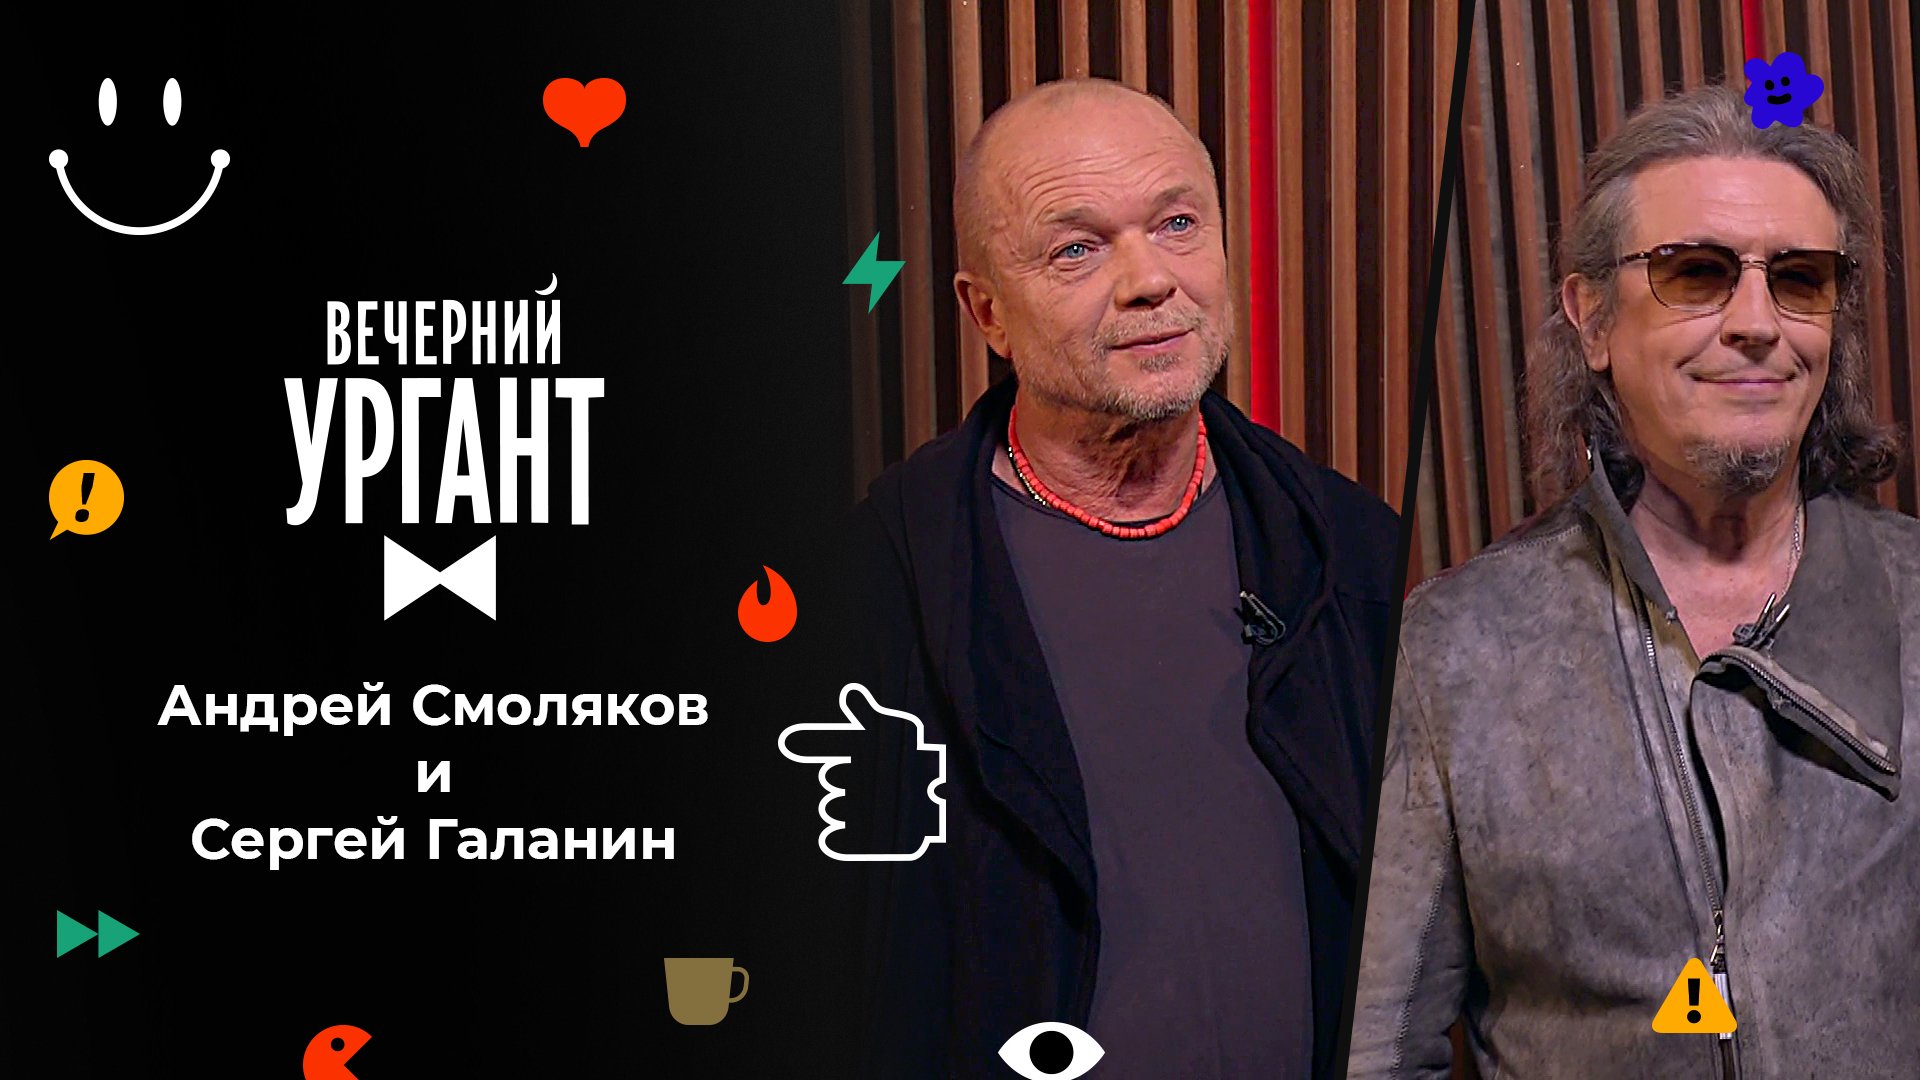 «Вечерний Ургант». Андрей Смоляков и Сергей Галанин